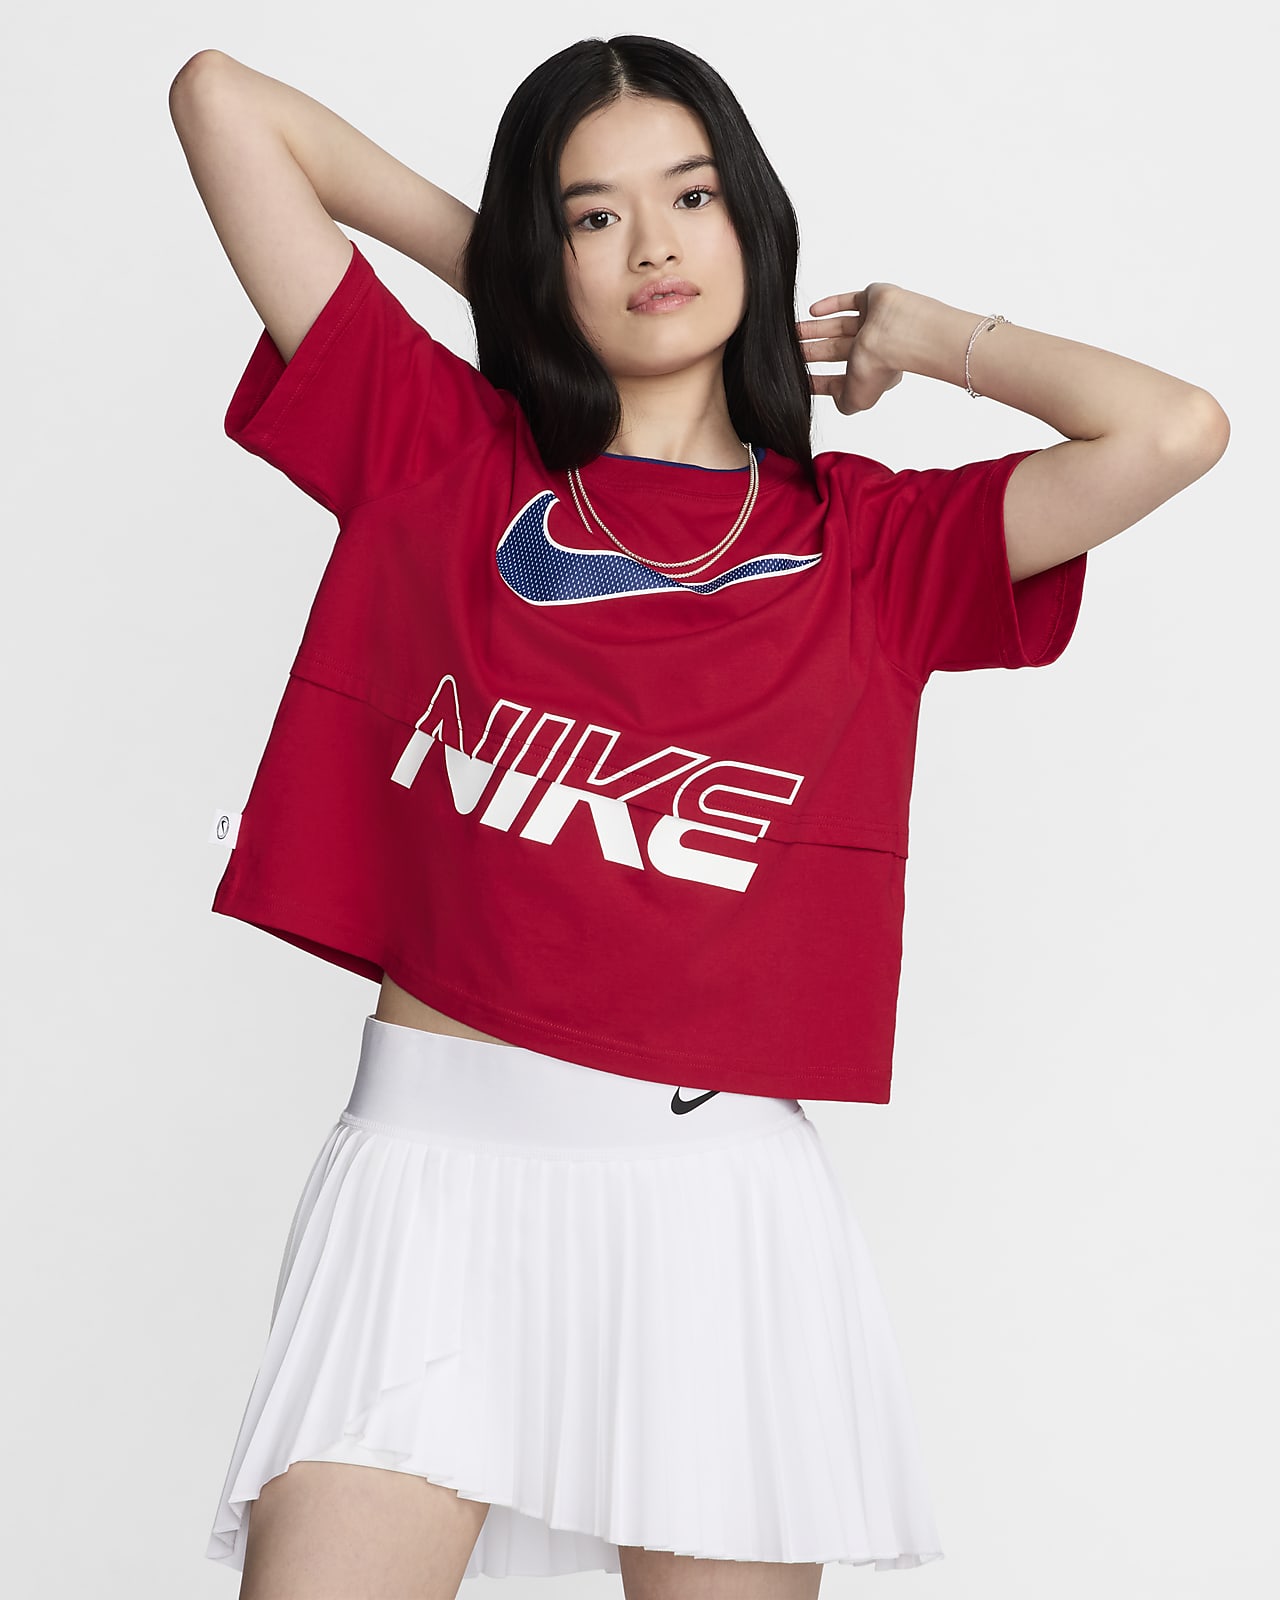 Nike Sportswear 女子短袖上衣